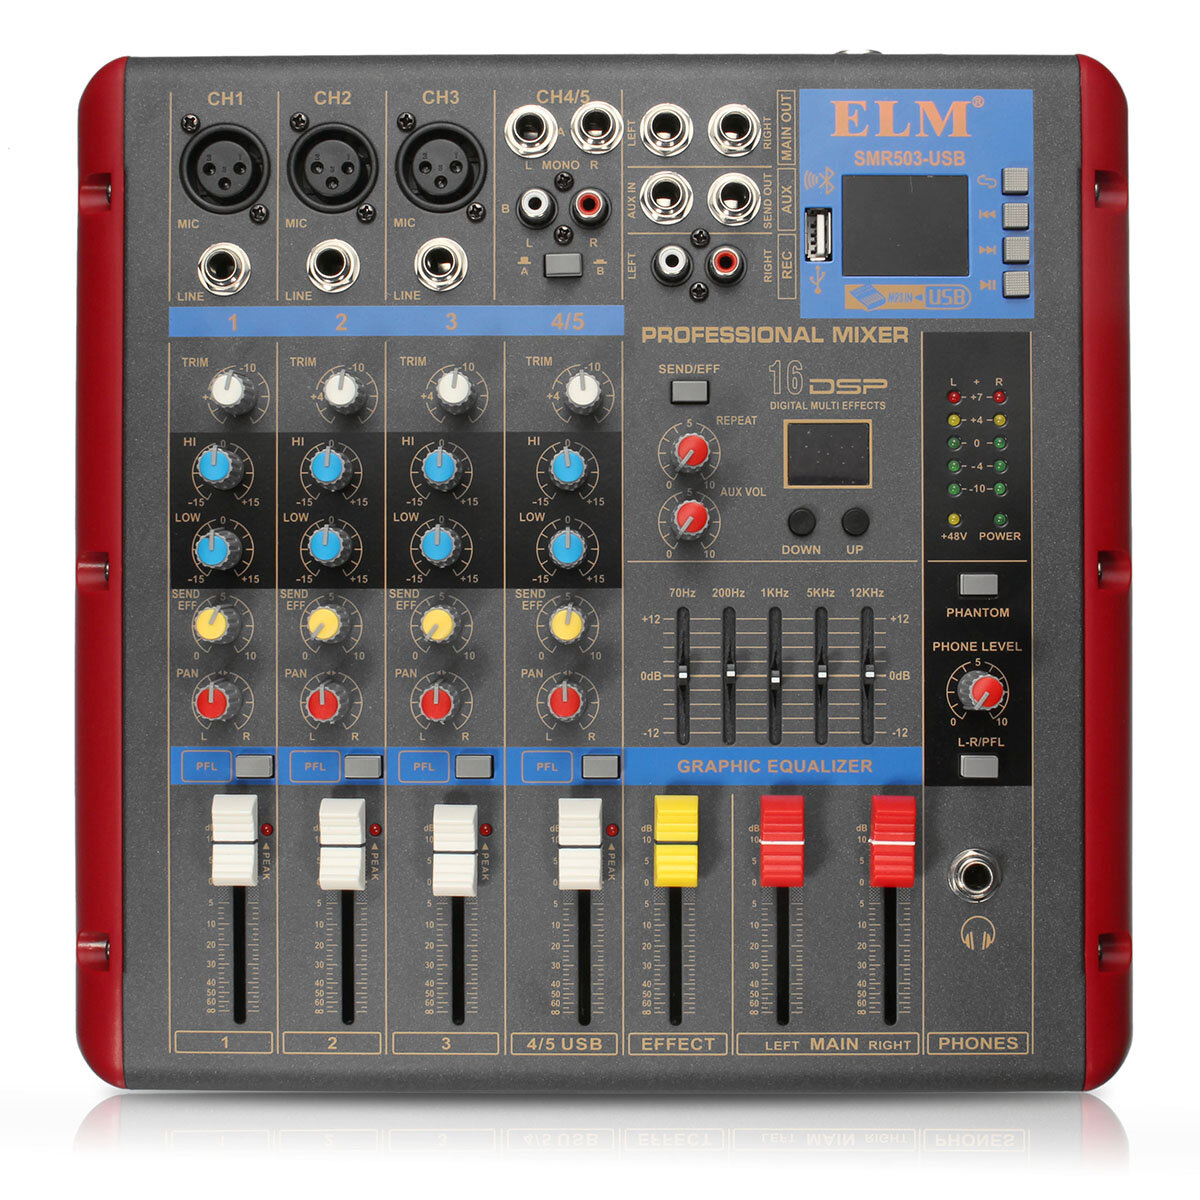 

ELM SMR503-USB bluetooth 4ch 48V Phantom Power Audio Mixer Mixing Console for KTV Karaoke Stage